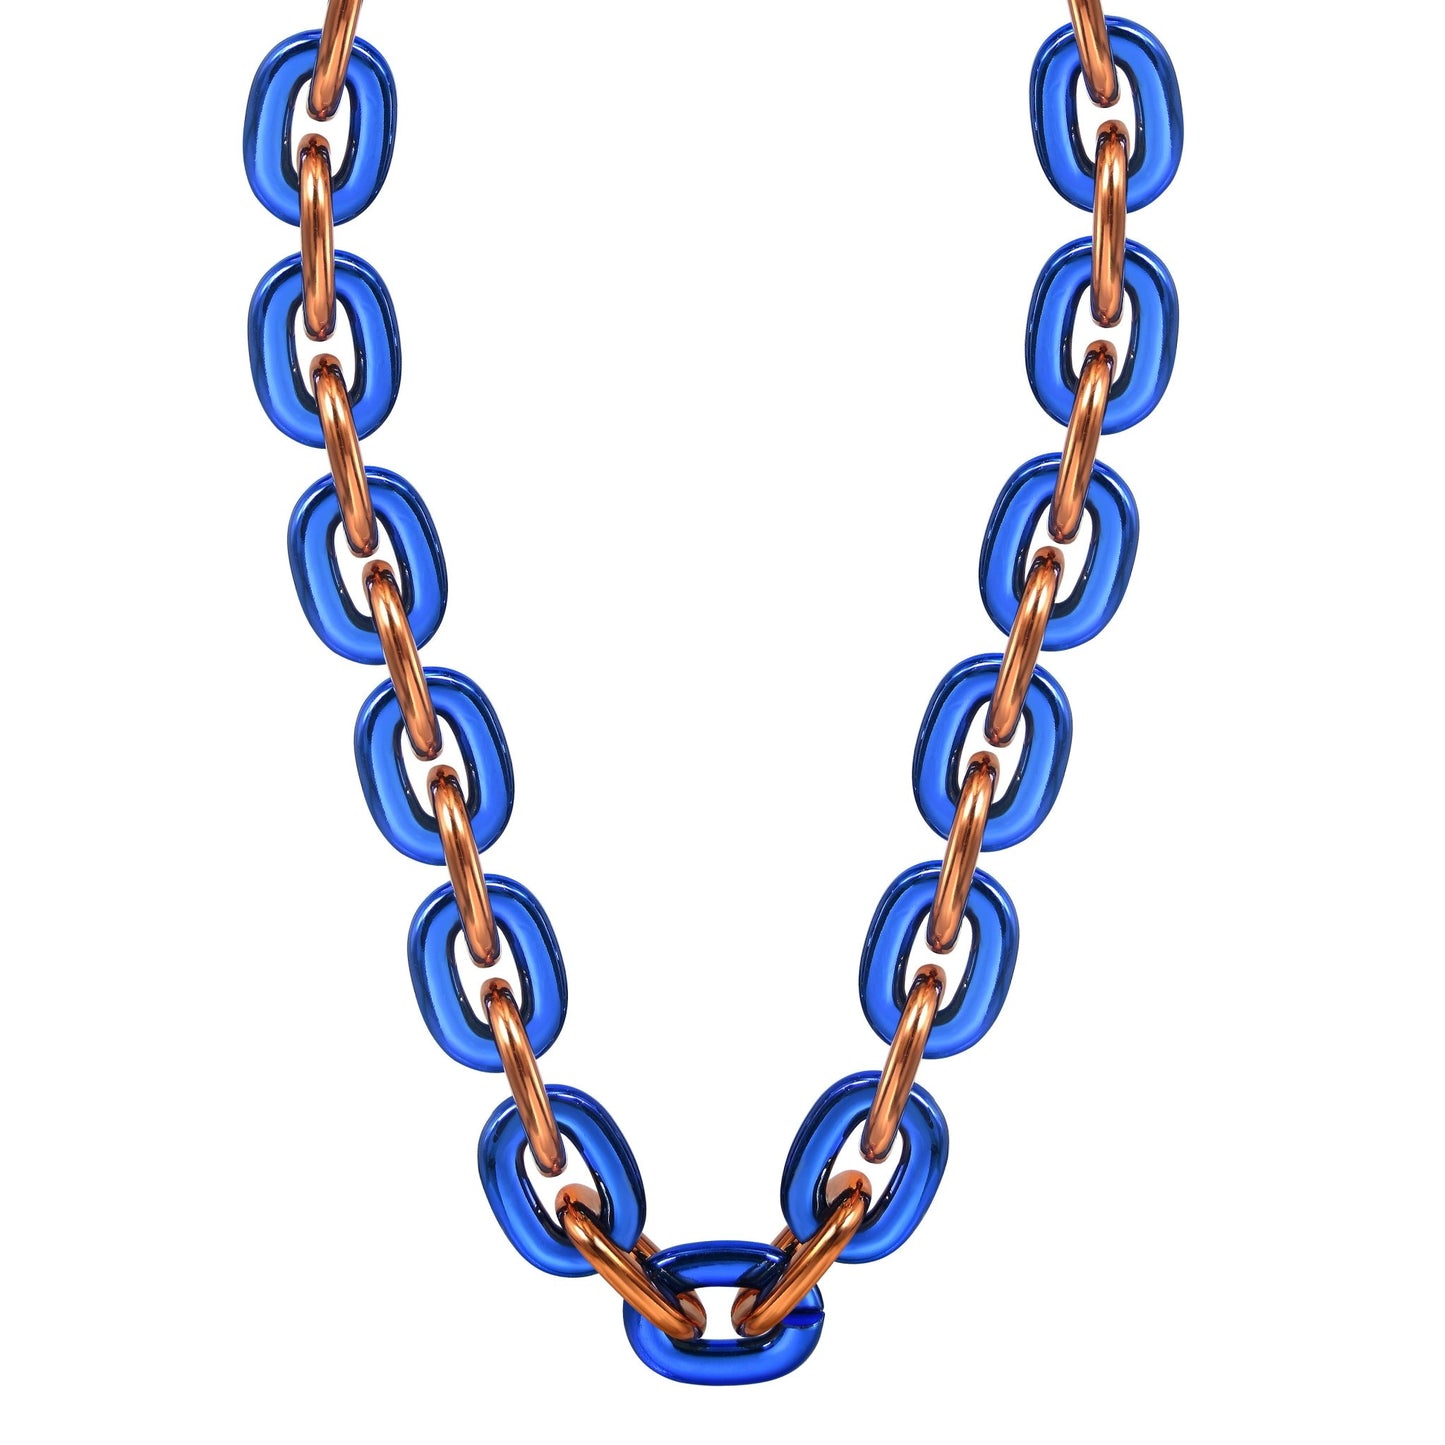 Jumbo Fan Chain Necklace - Gamedays Gear - Royal Blue / Orange